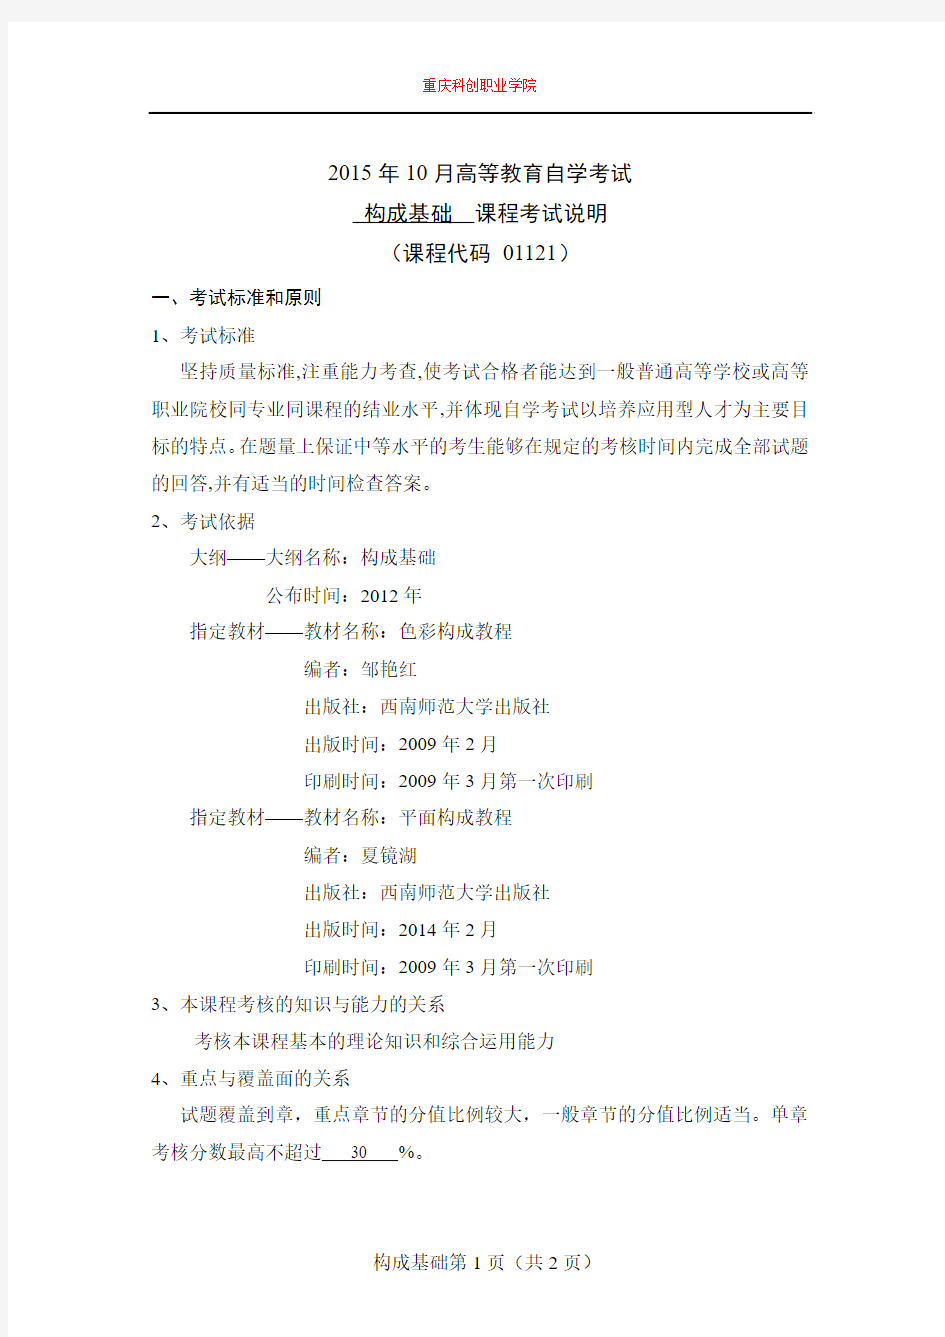 重庆科创职业学院2015年10月高等教育自学考试构成基础课程考试说明